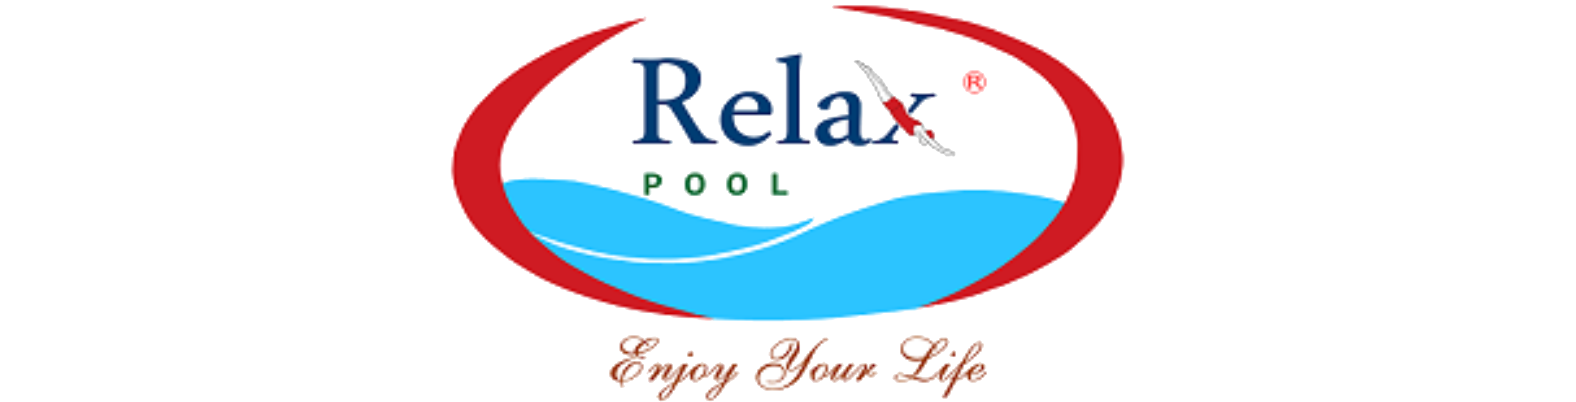 Cung Cấp Lắp Đặt Thiết Bị Hồ Bơi (Bể Bơi) Chính Hãng | RelaxPool